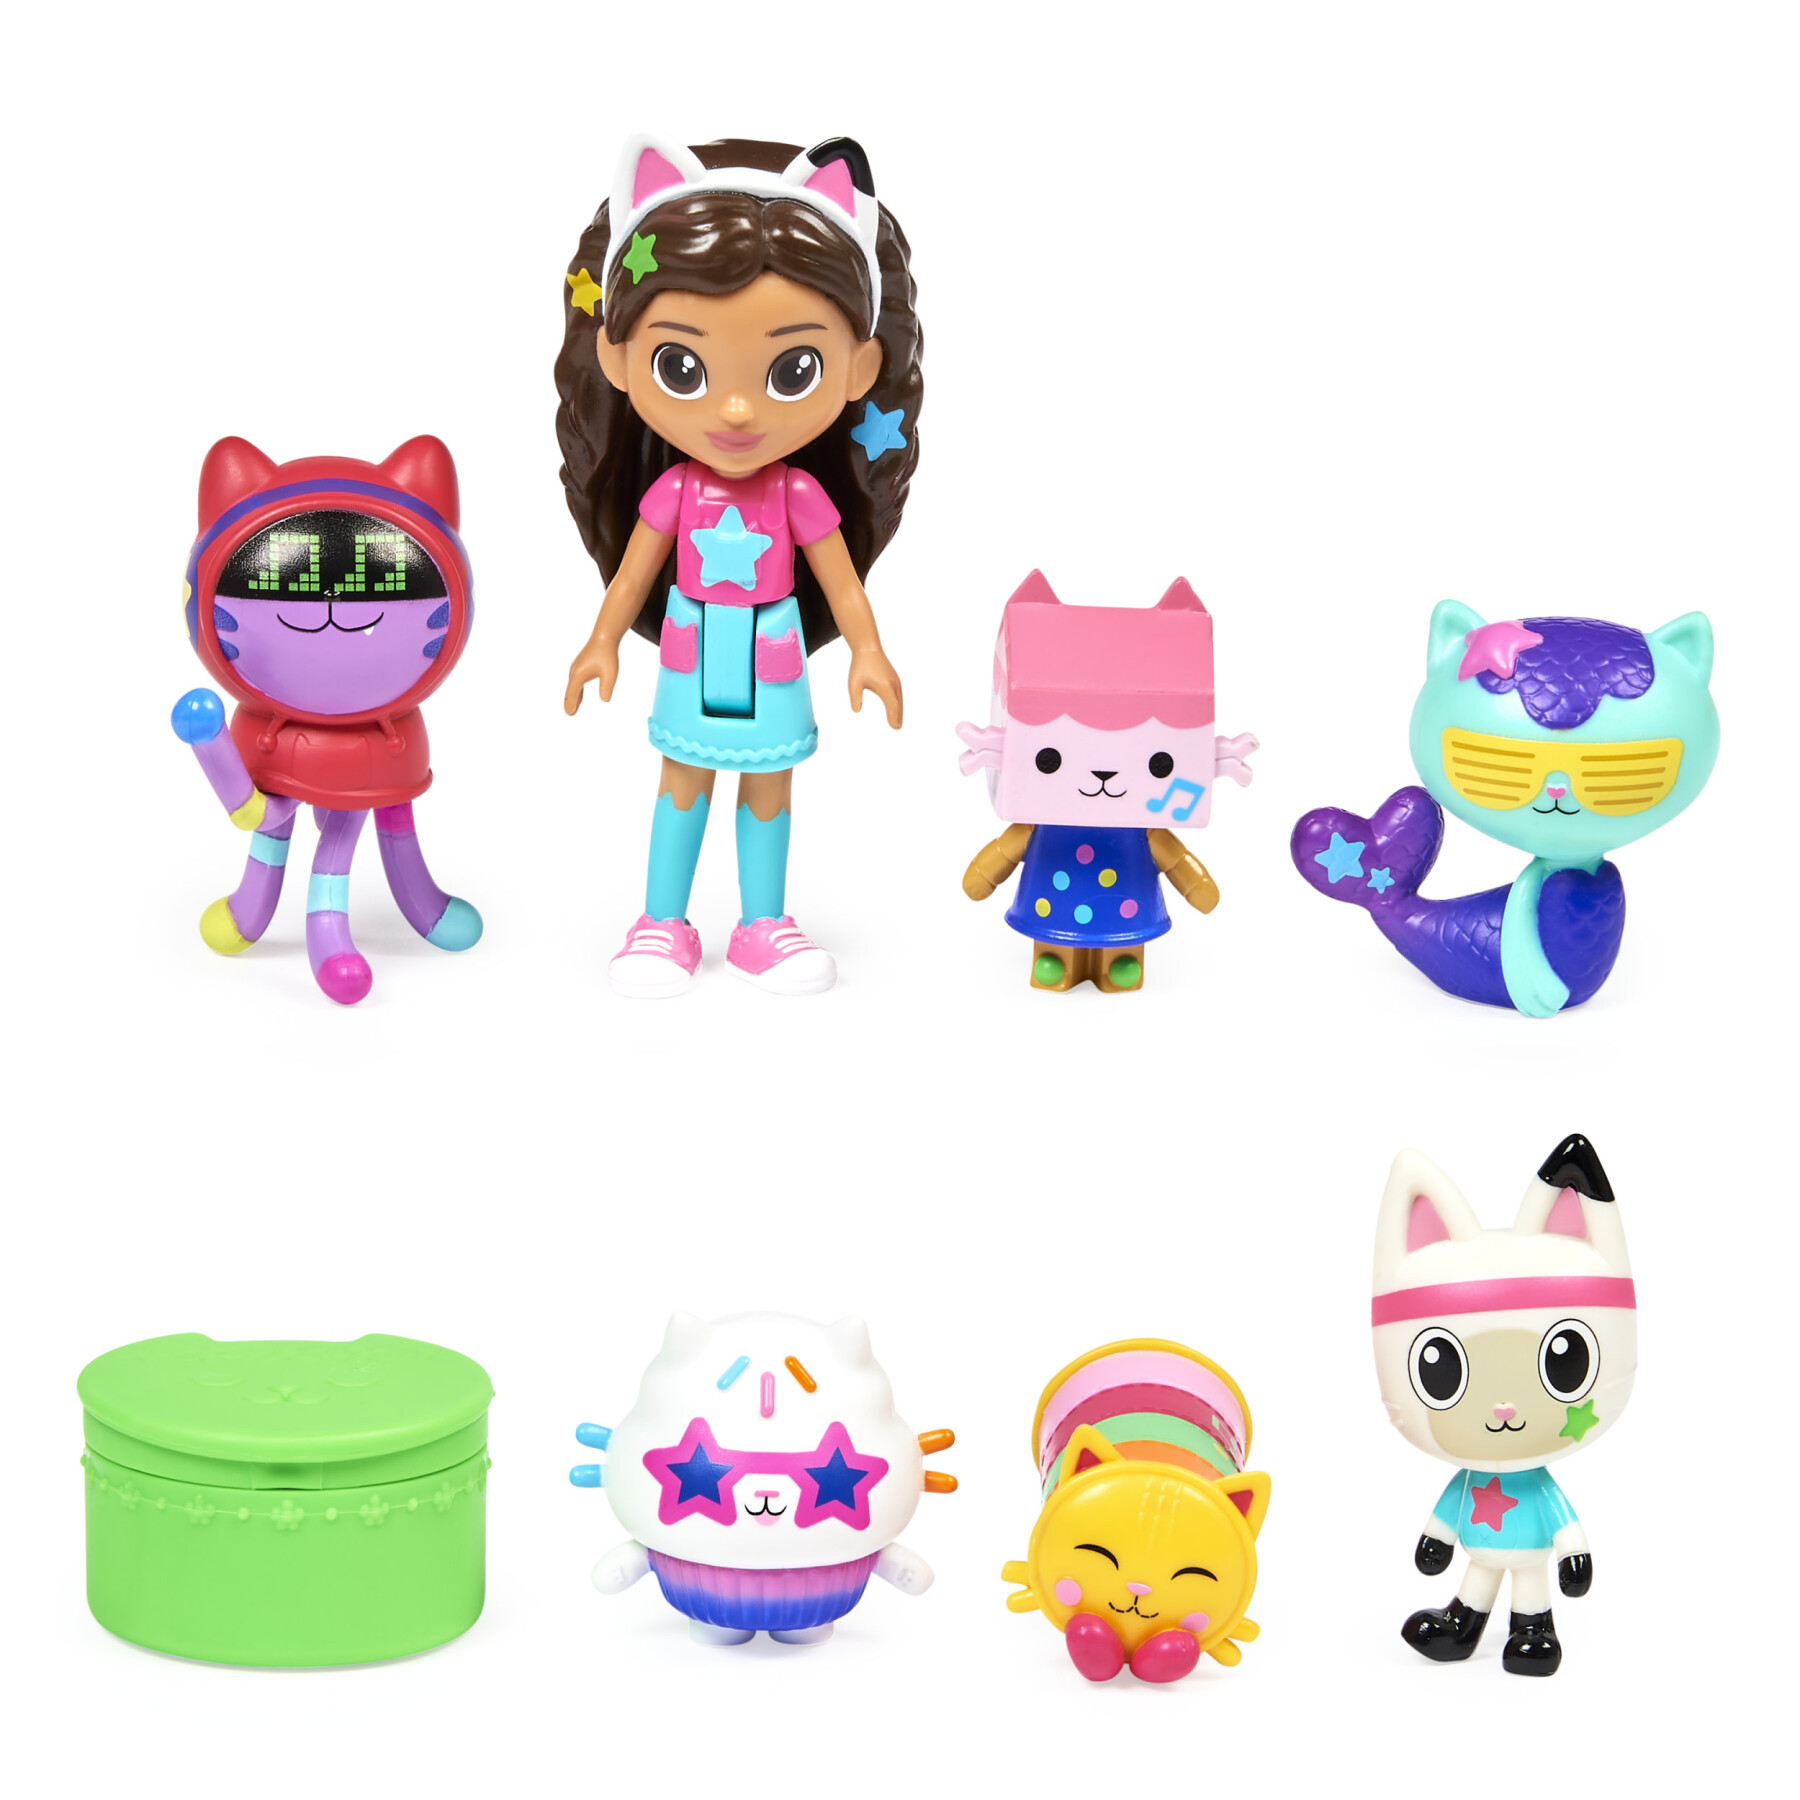 Gabby's dollhouse, set di personaggi a tema festa da ballo con bambola di  gabby, 6 gatti giocattolo e accessori, per bambini dai 3 anni in su. - Toys  Center